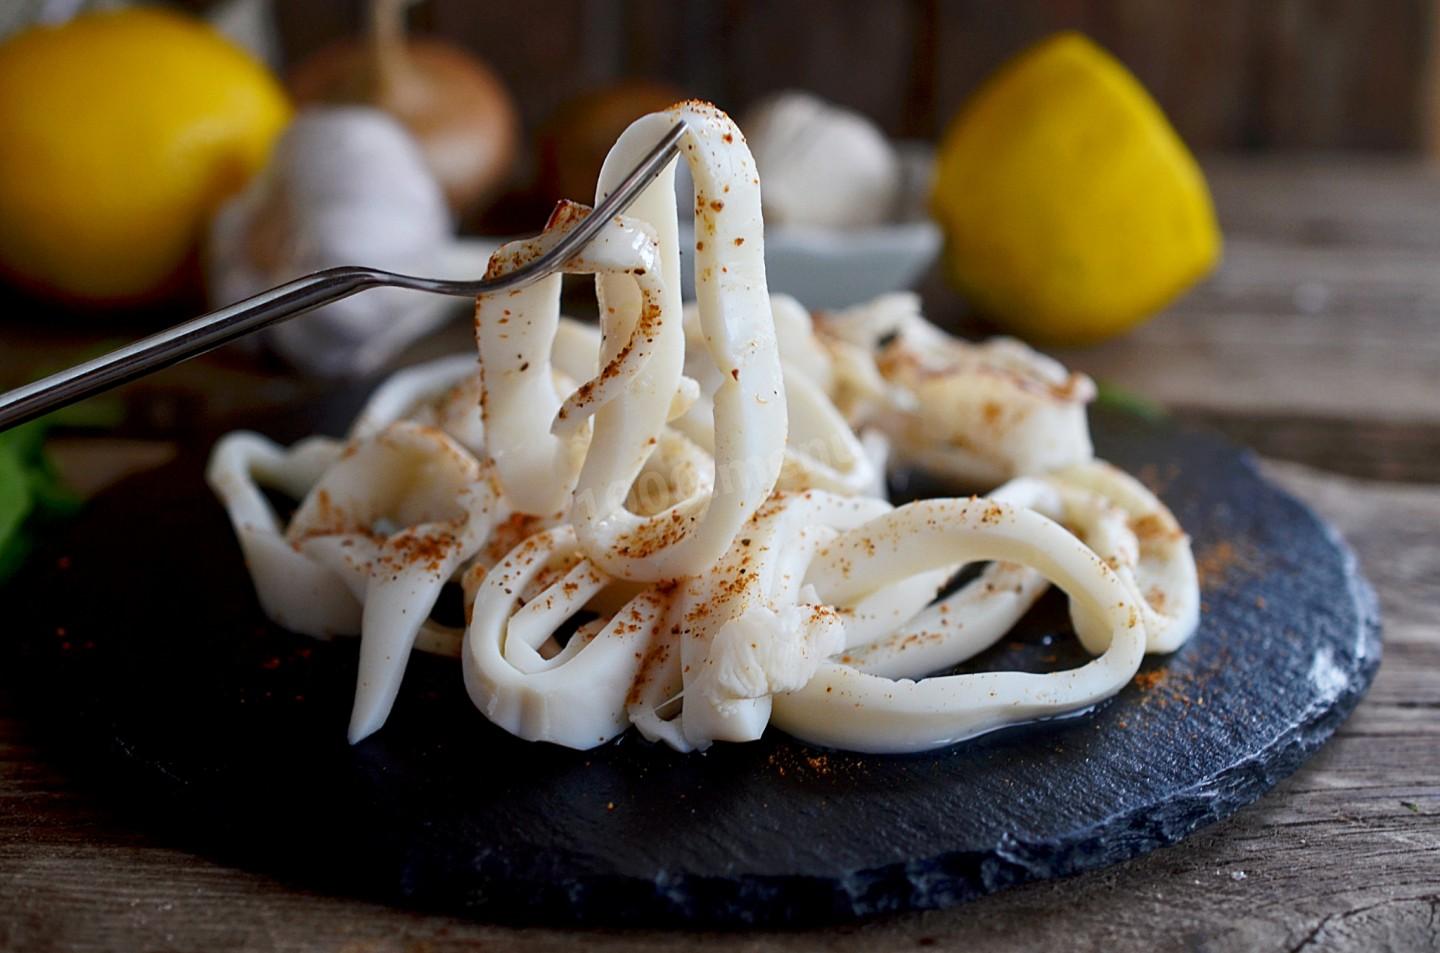 Фото кальмара приготовленного. Кальмар еда. Приготовление кальмара. Запеченные кальмары. Кальмар маринованный.